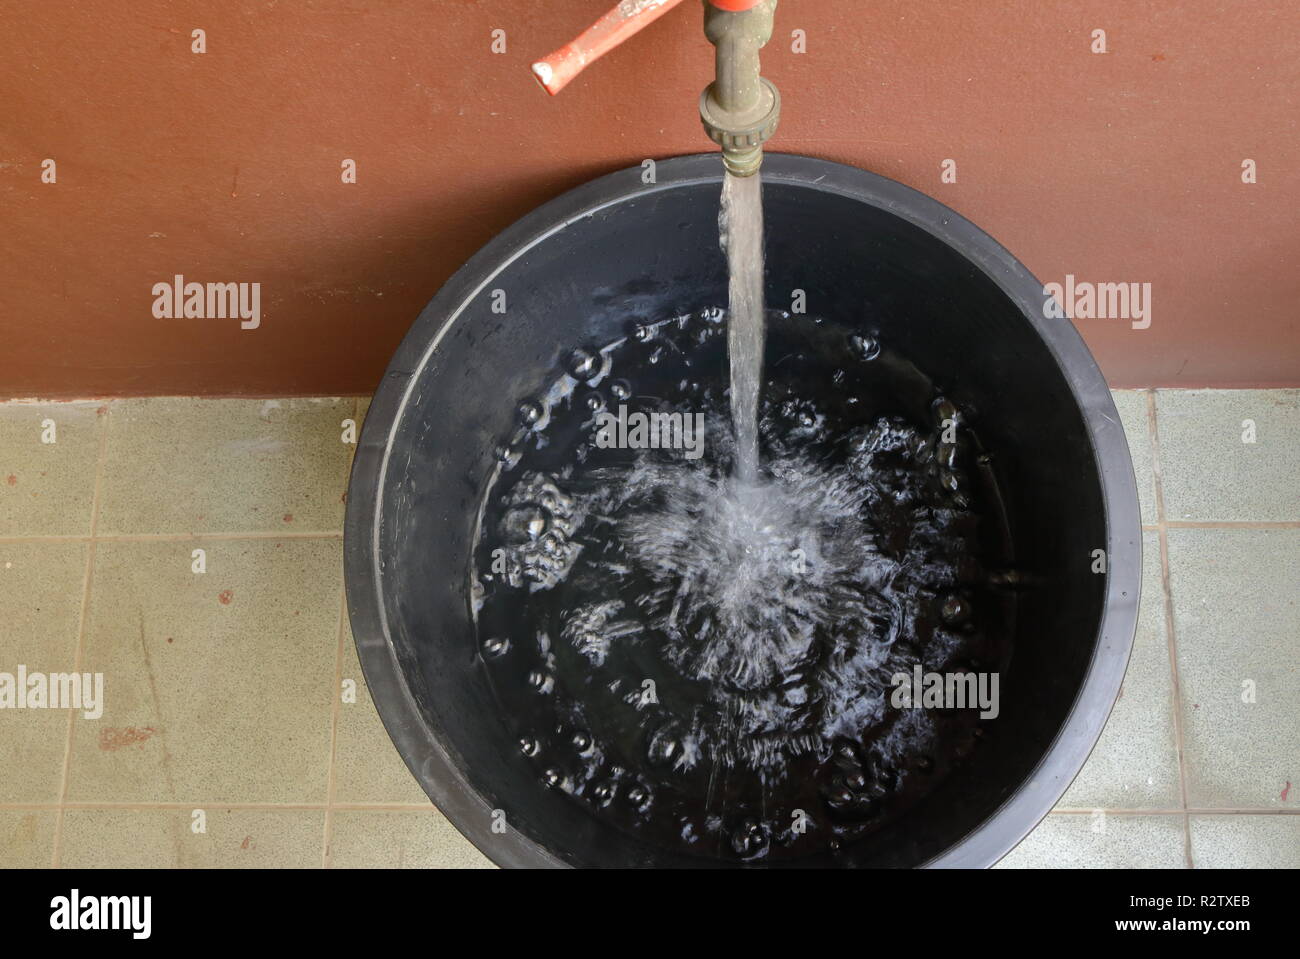 Blick von oben auf das Wasser in einen großen schwarzen Eimer auf  schmutzigen Boden fließt, Konzept speichern Stockfotografie - Alamy